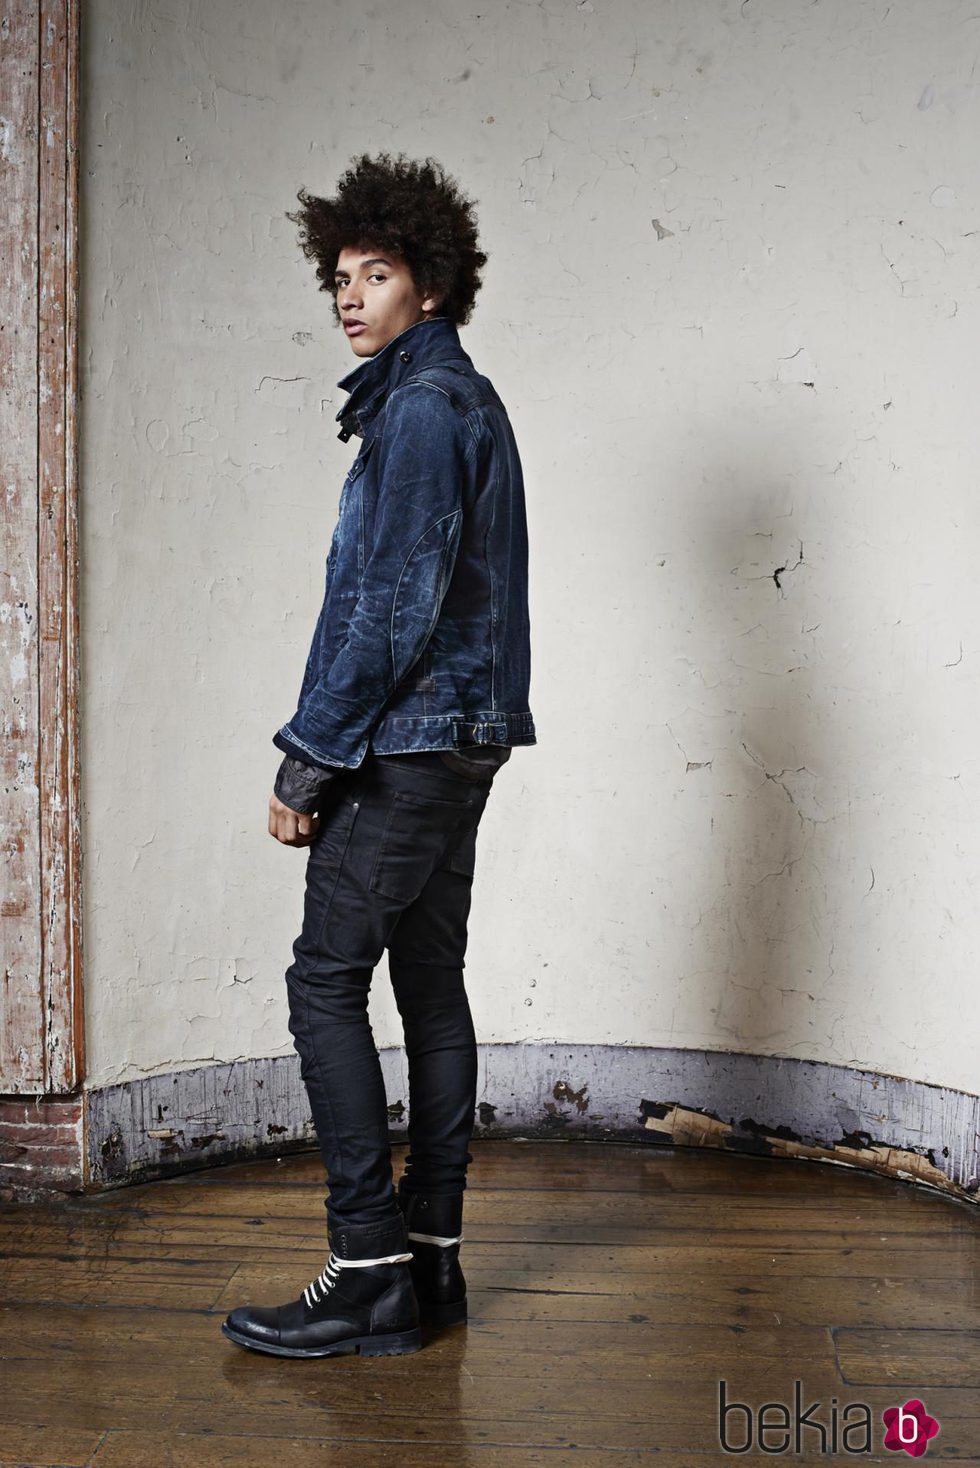 Chaqueta vaquera y jeans de la colección 'La evolución del denim' de invierno 2015 de G-Star